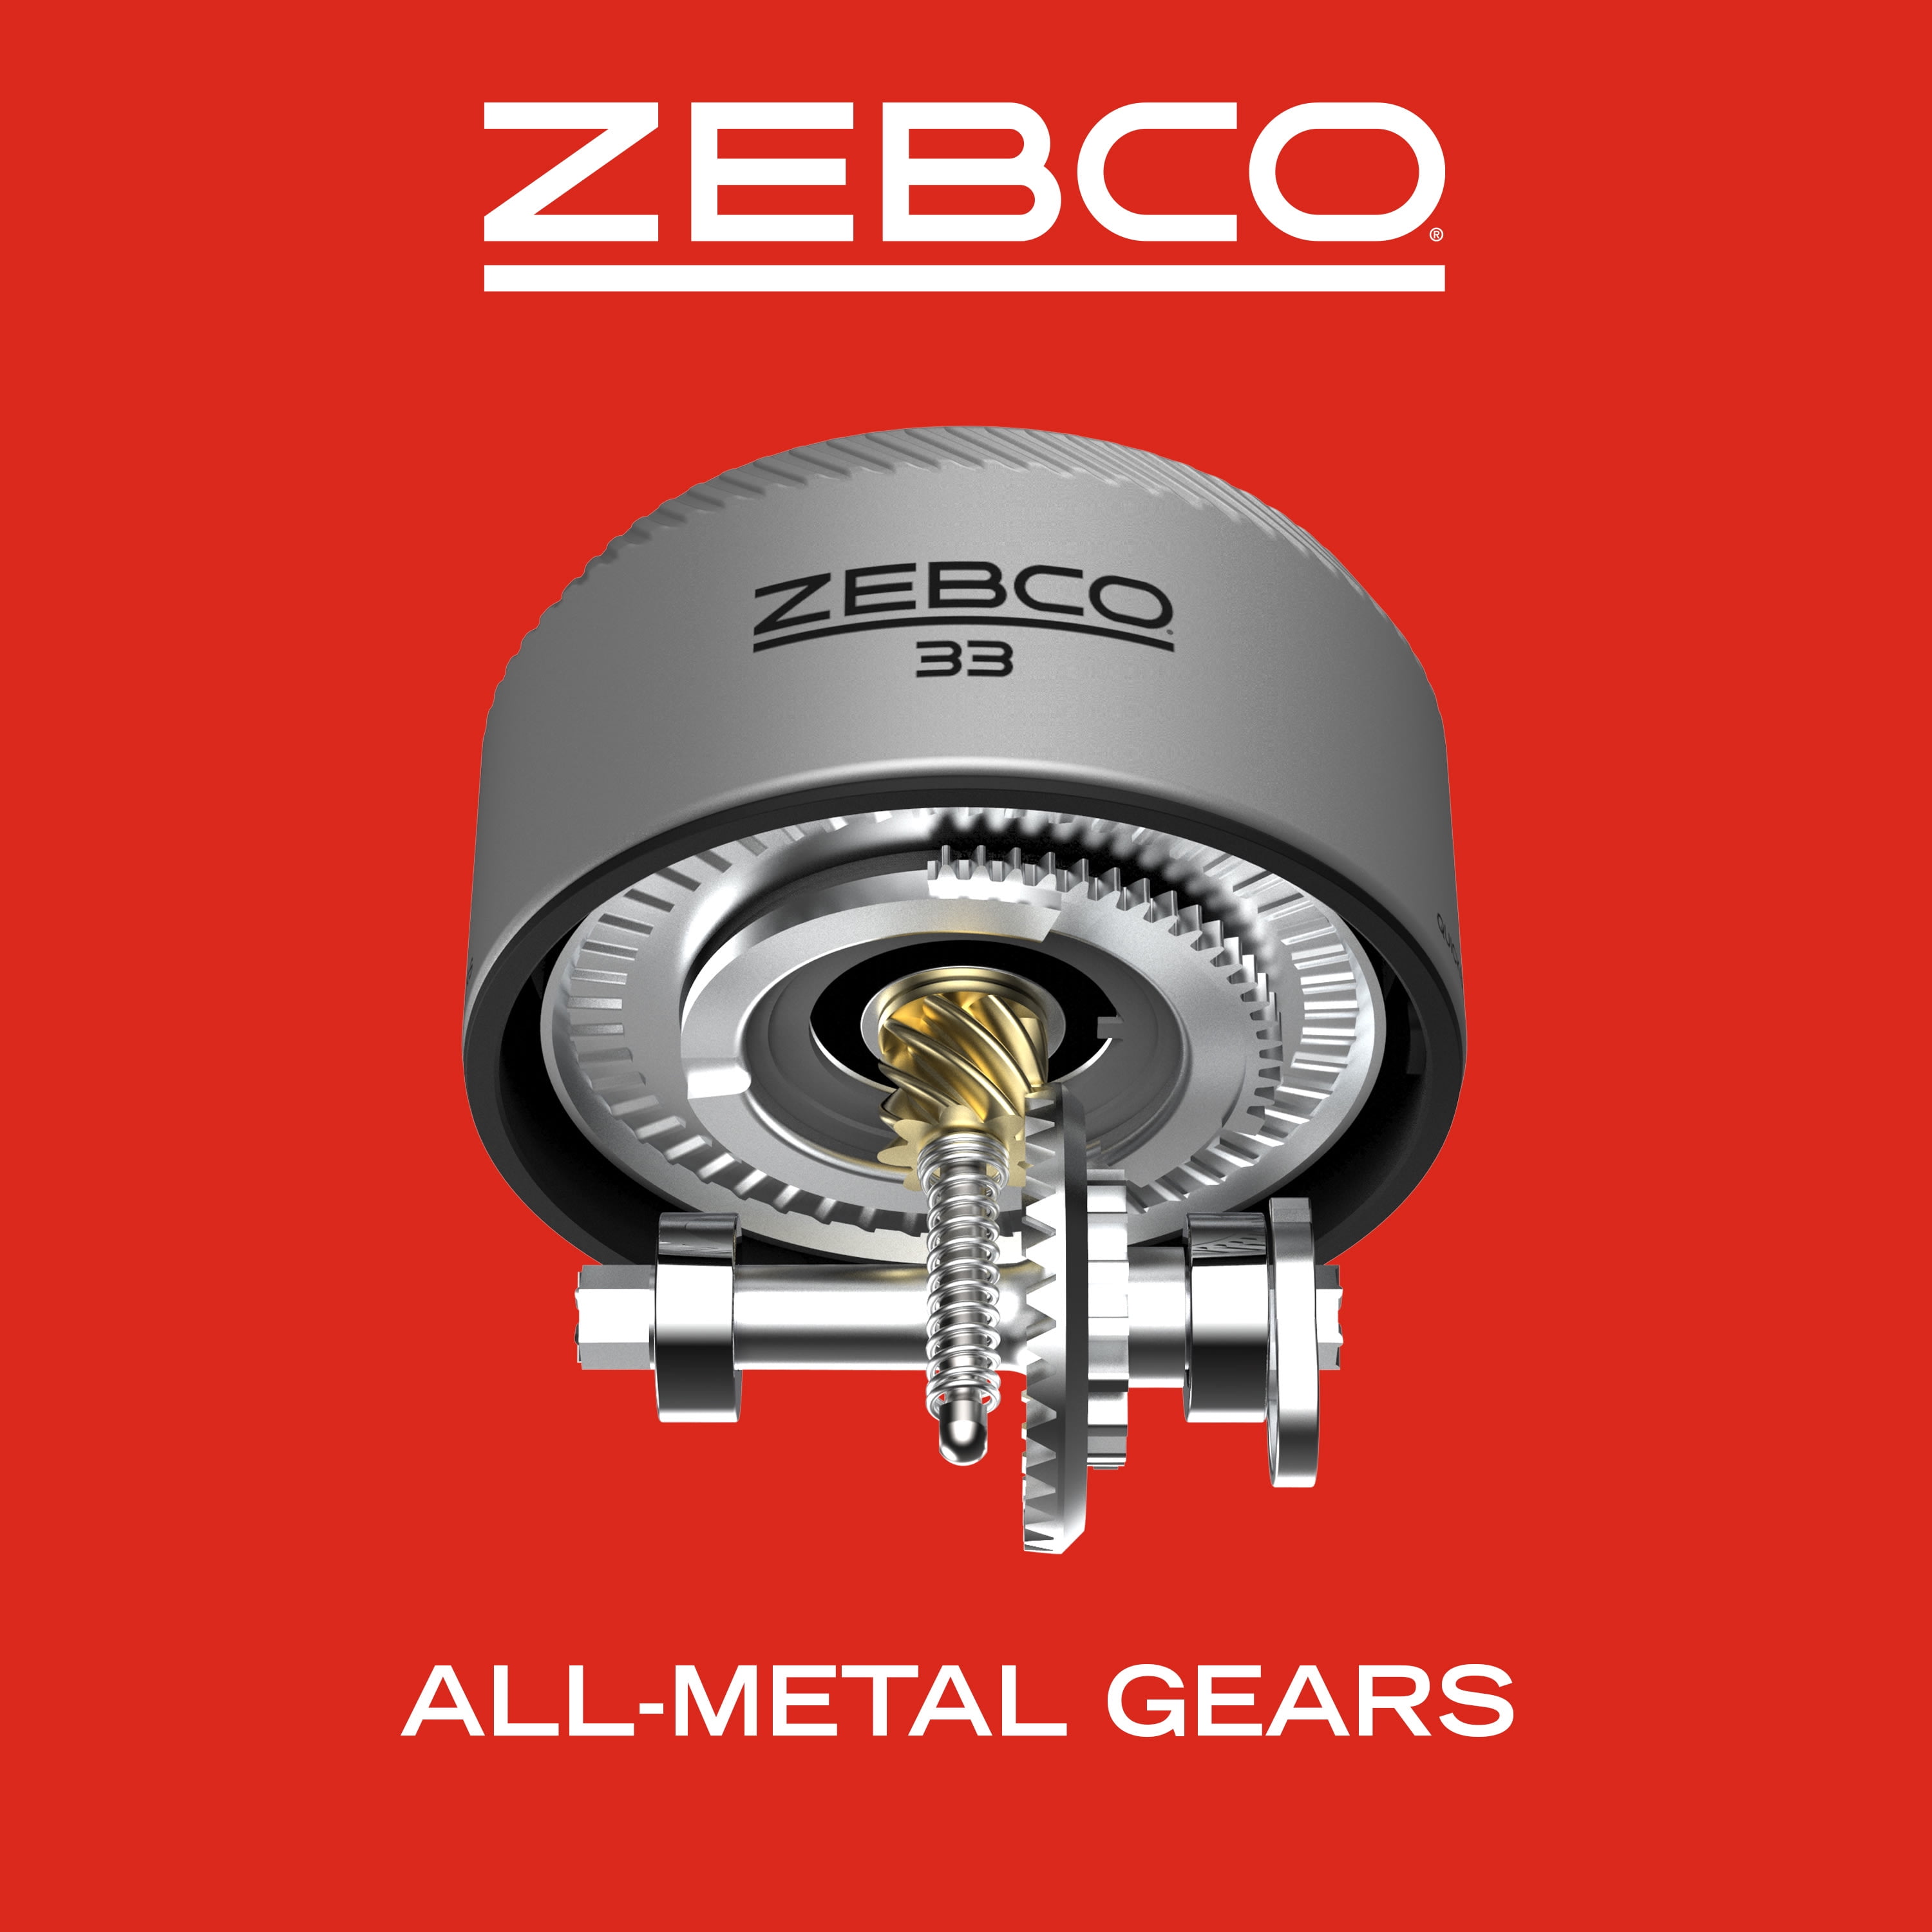 Zebco 33602M, 10C, NS4 Zebco 33 Spincast Combo, 6' Length, 2Piece Rod,  電動工具